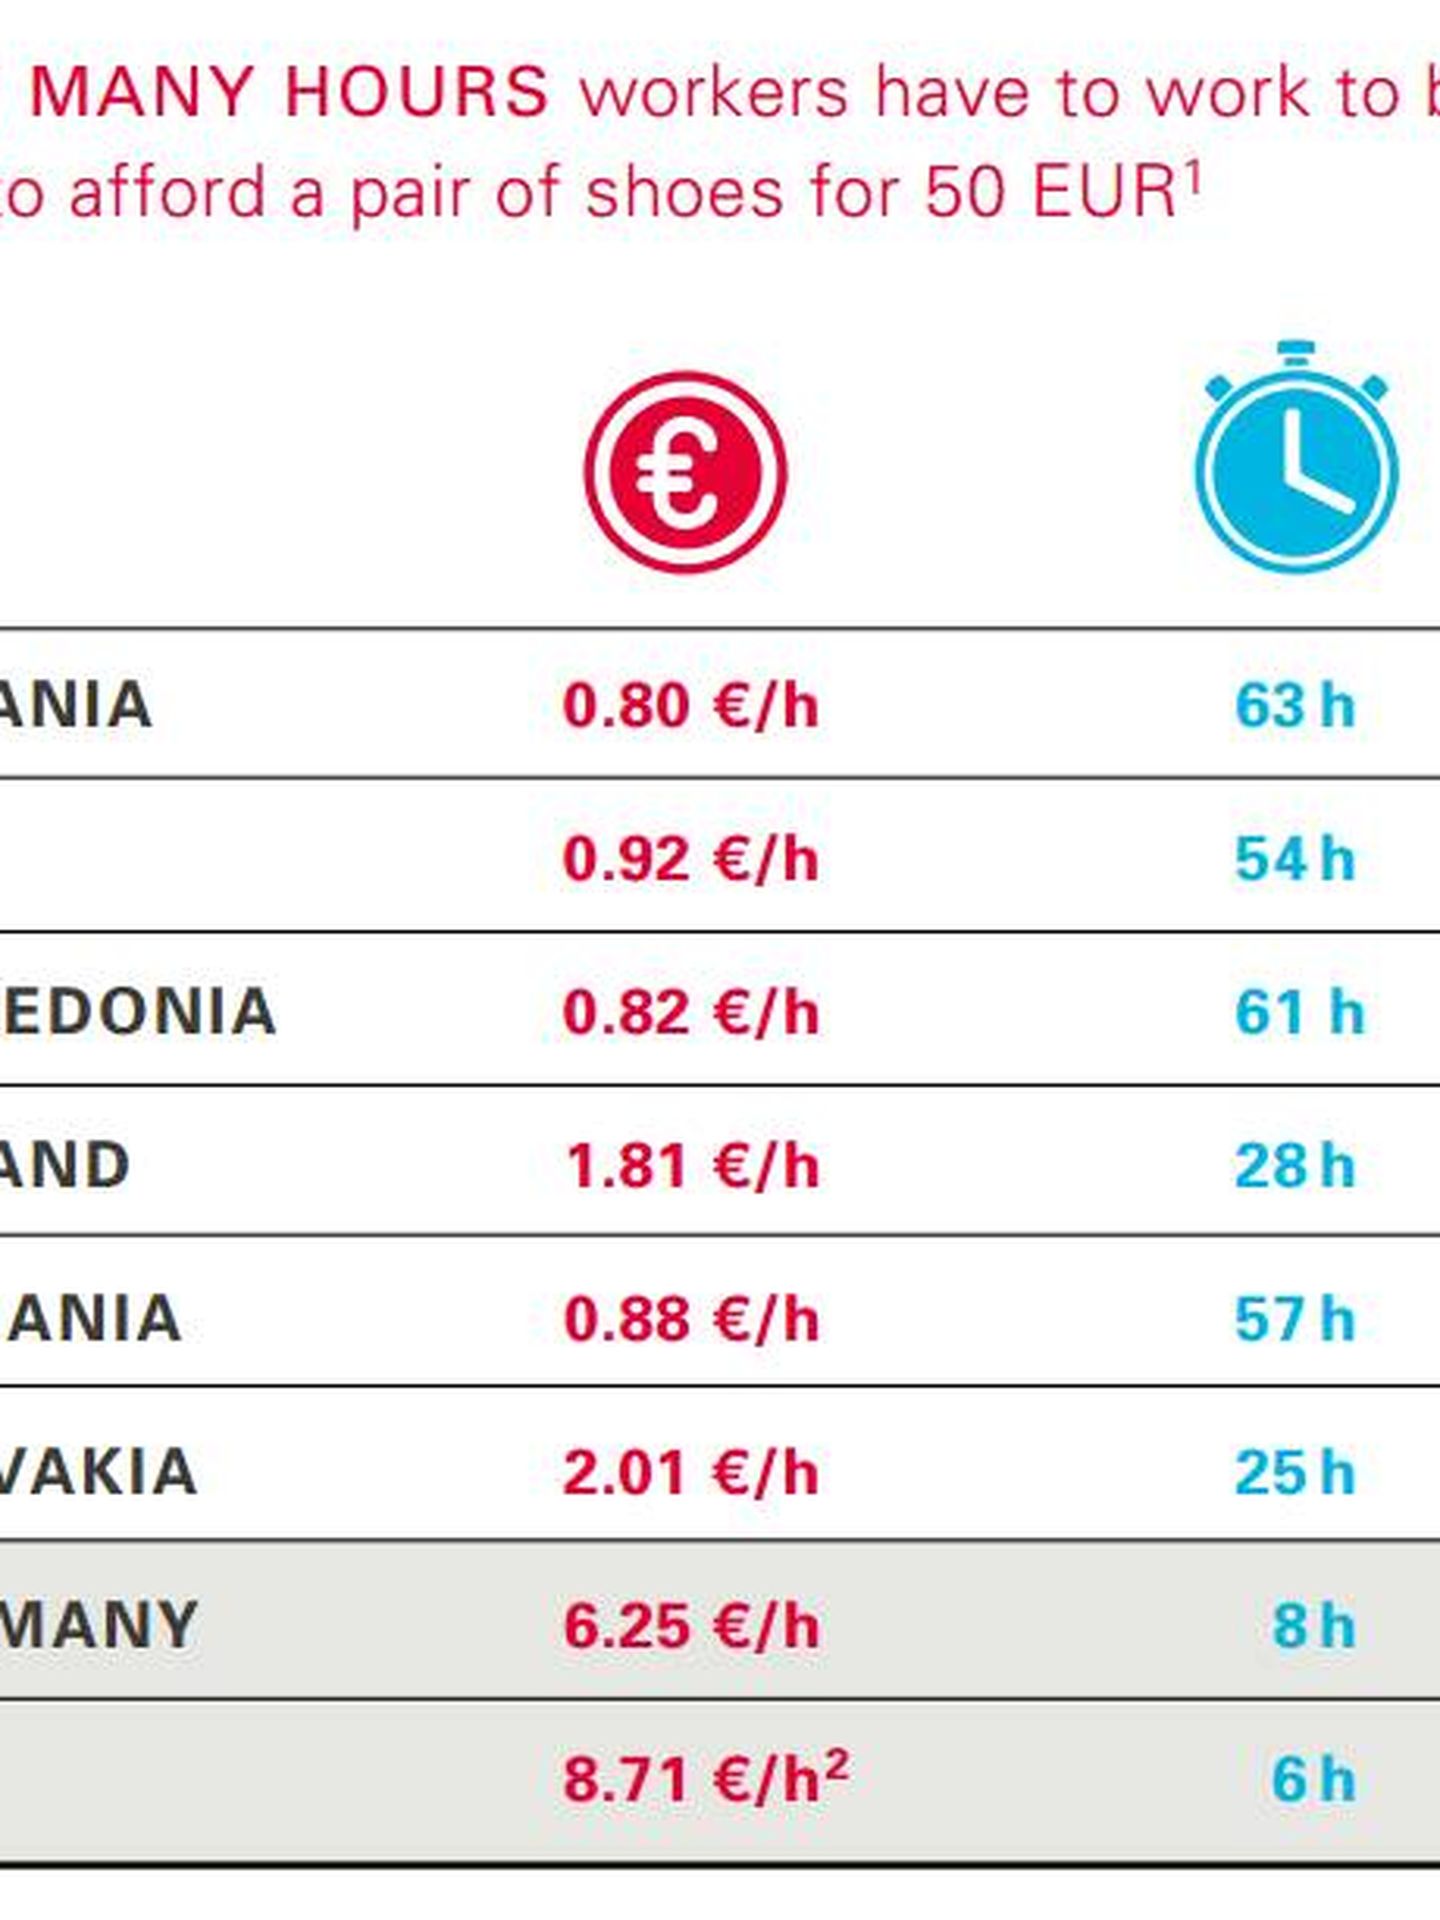 ¿Cuántas horas tienen que trabajar los empleados para comprarse unos zapatos de 50 euros? (Fuente: LBL)